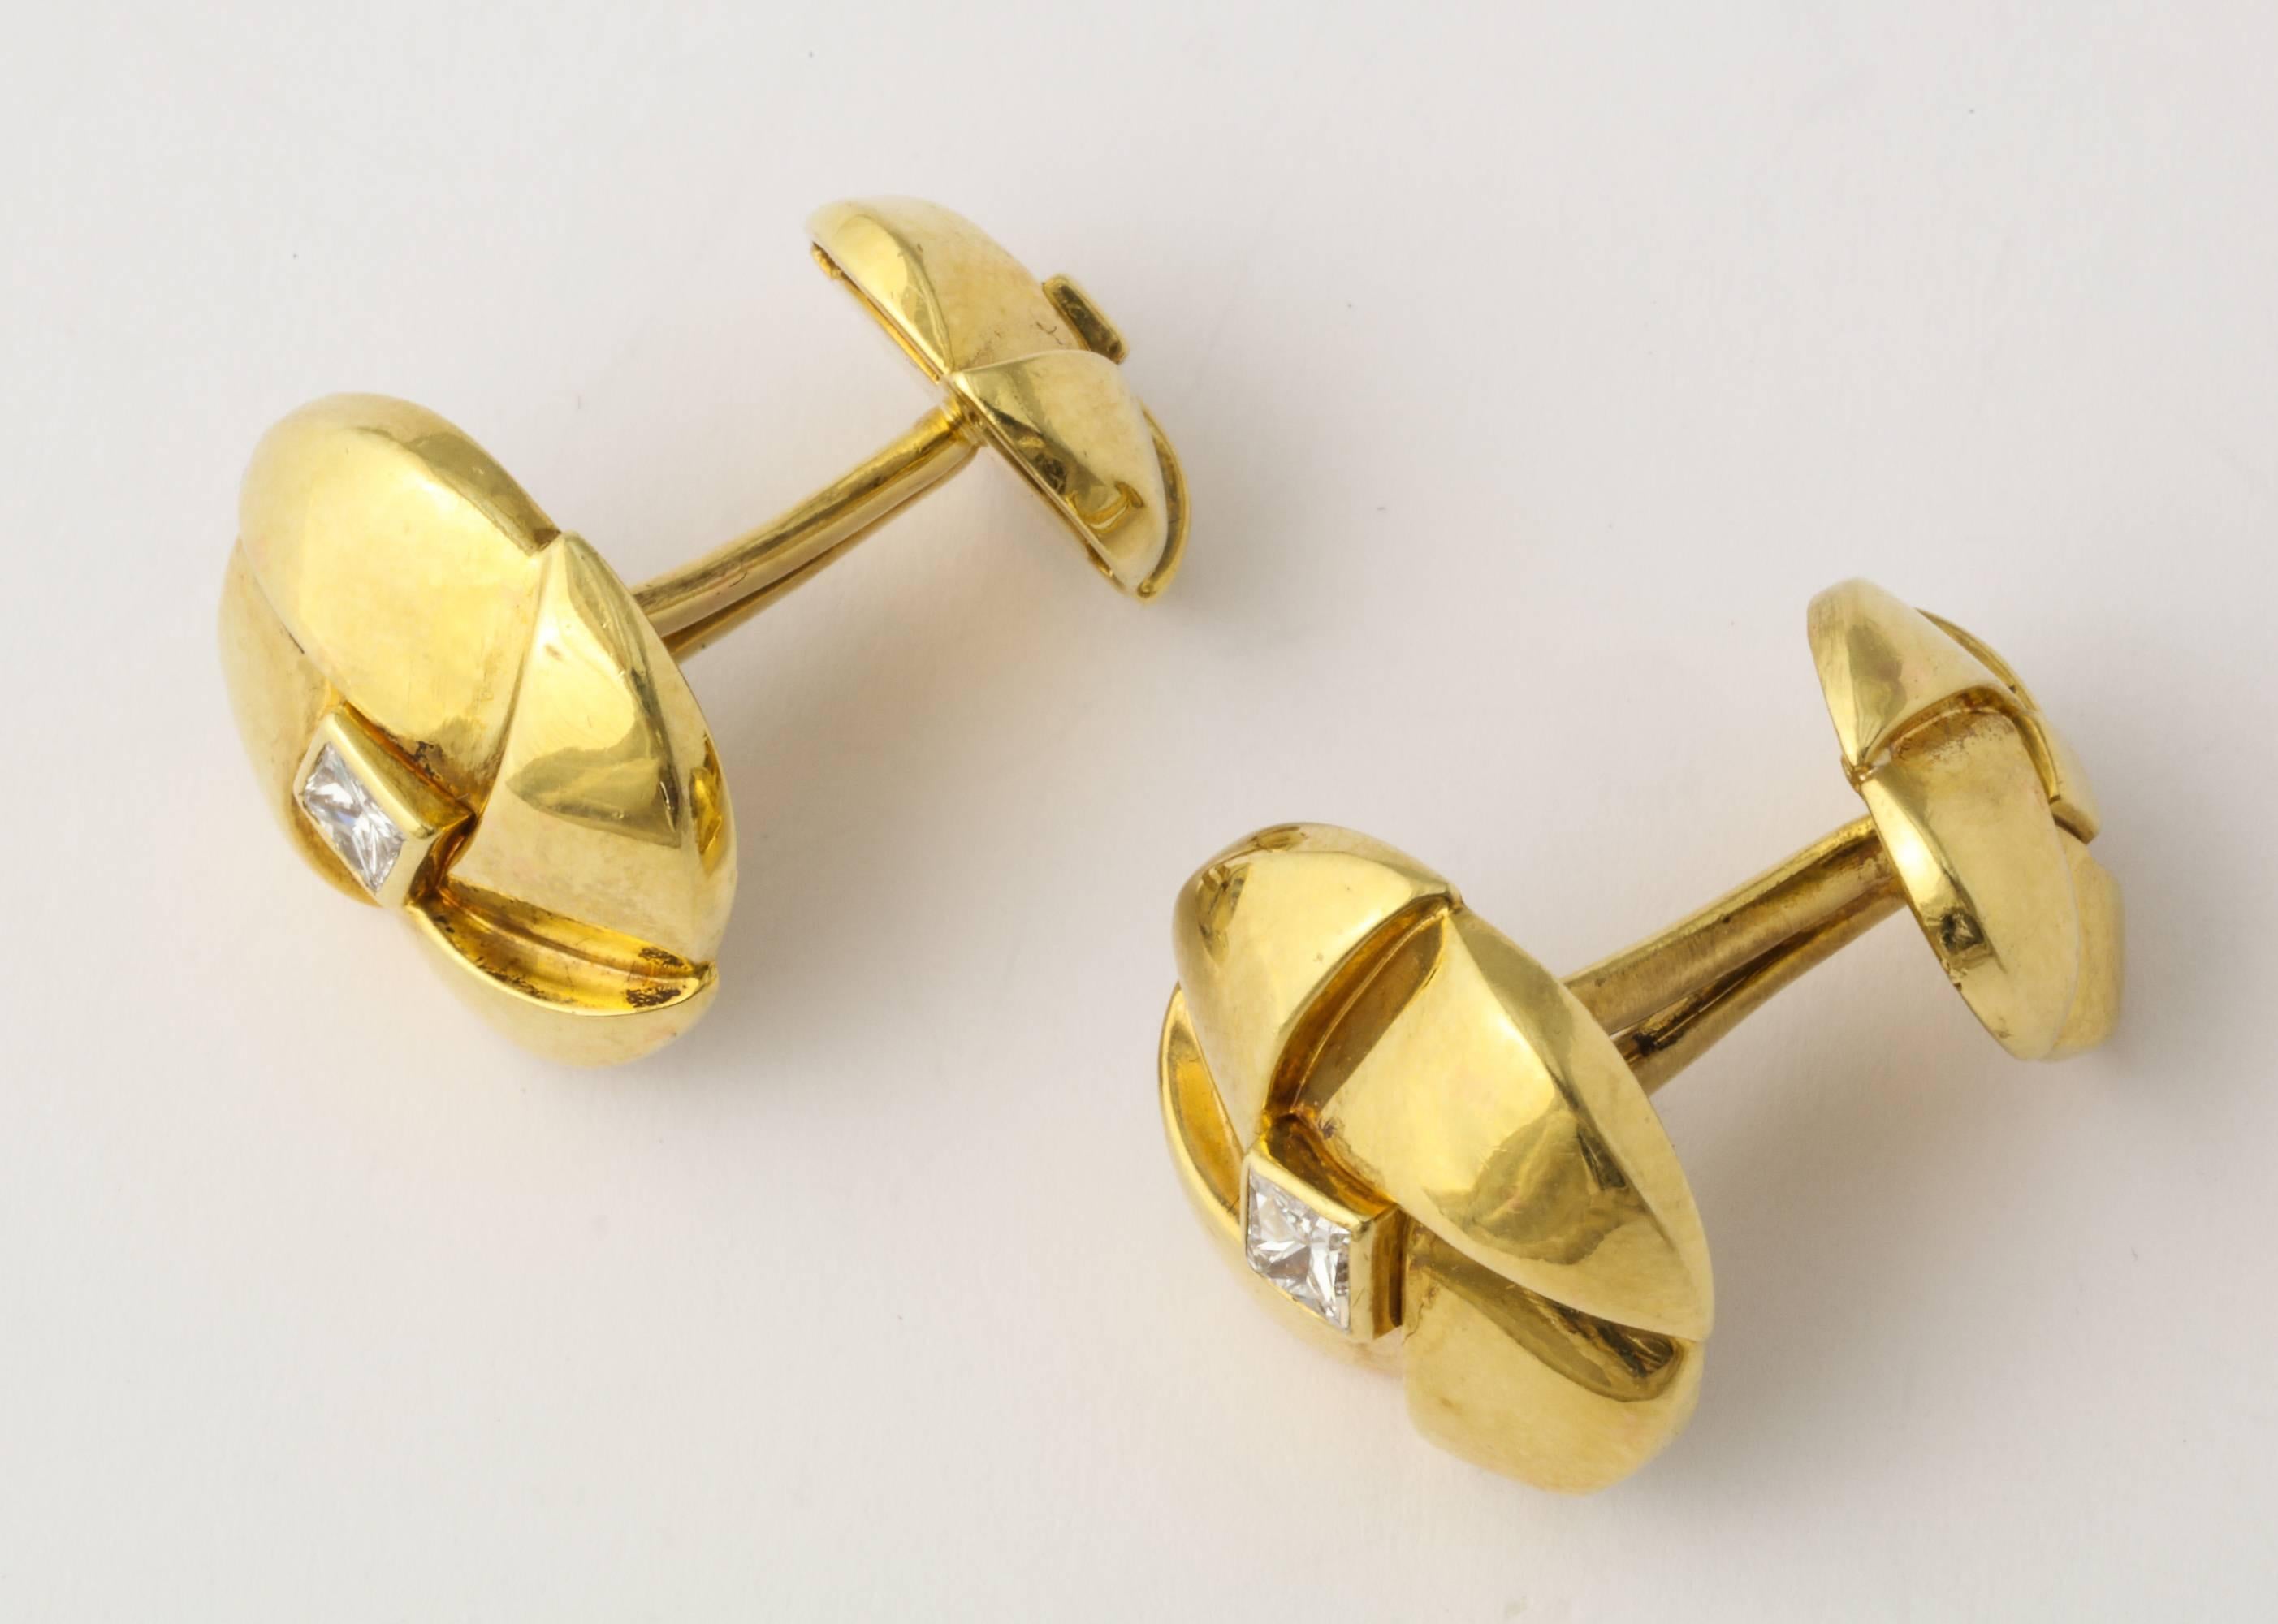 Une belle paire de boutons de manchette Jose Hess en or 18K, sertis de diamants taillés en carré. .855 grammes. diamètre de 3/4 de pouce. Gold, et Jose Hess marque.